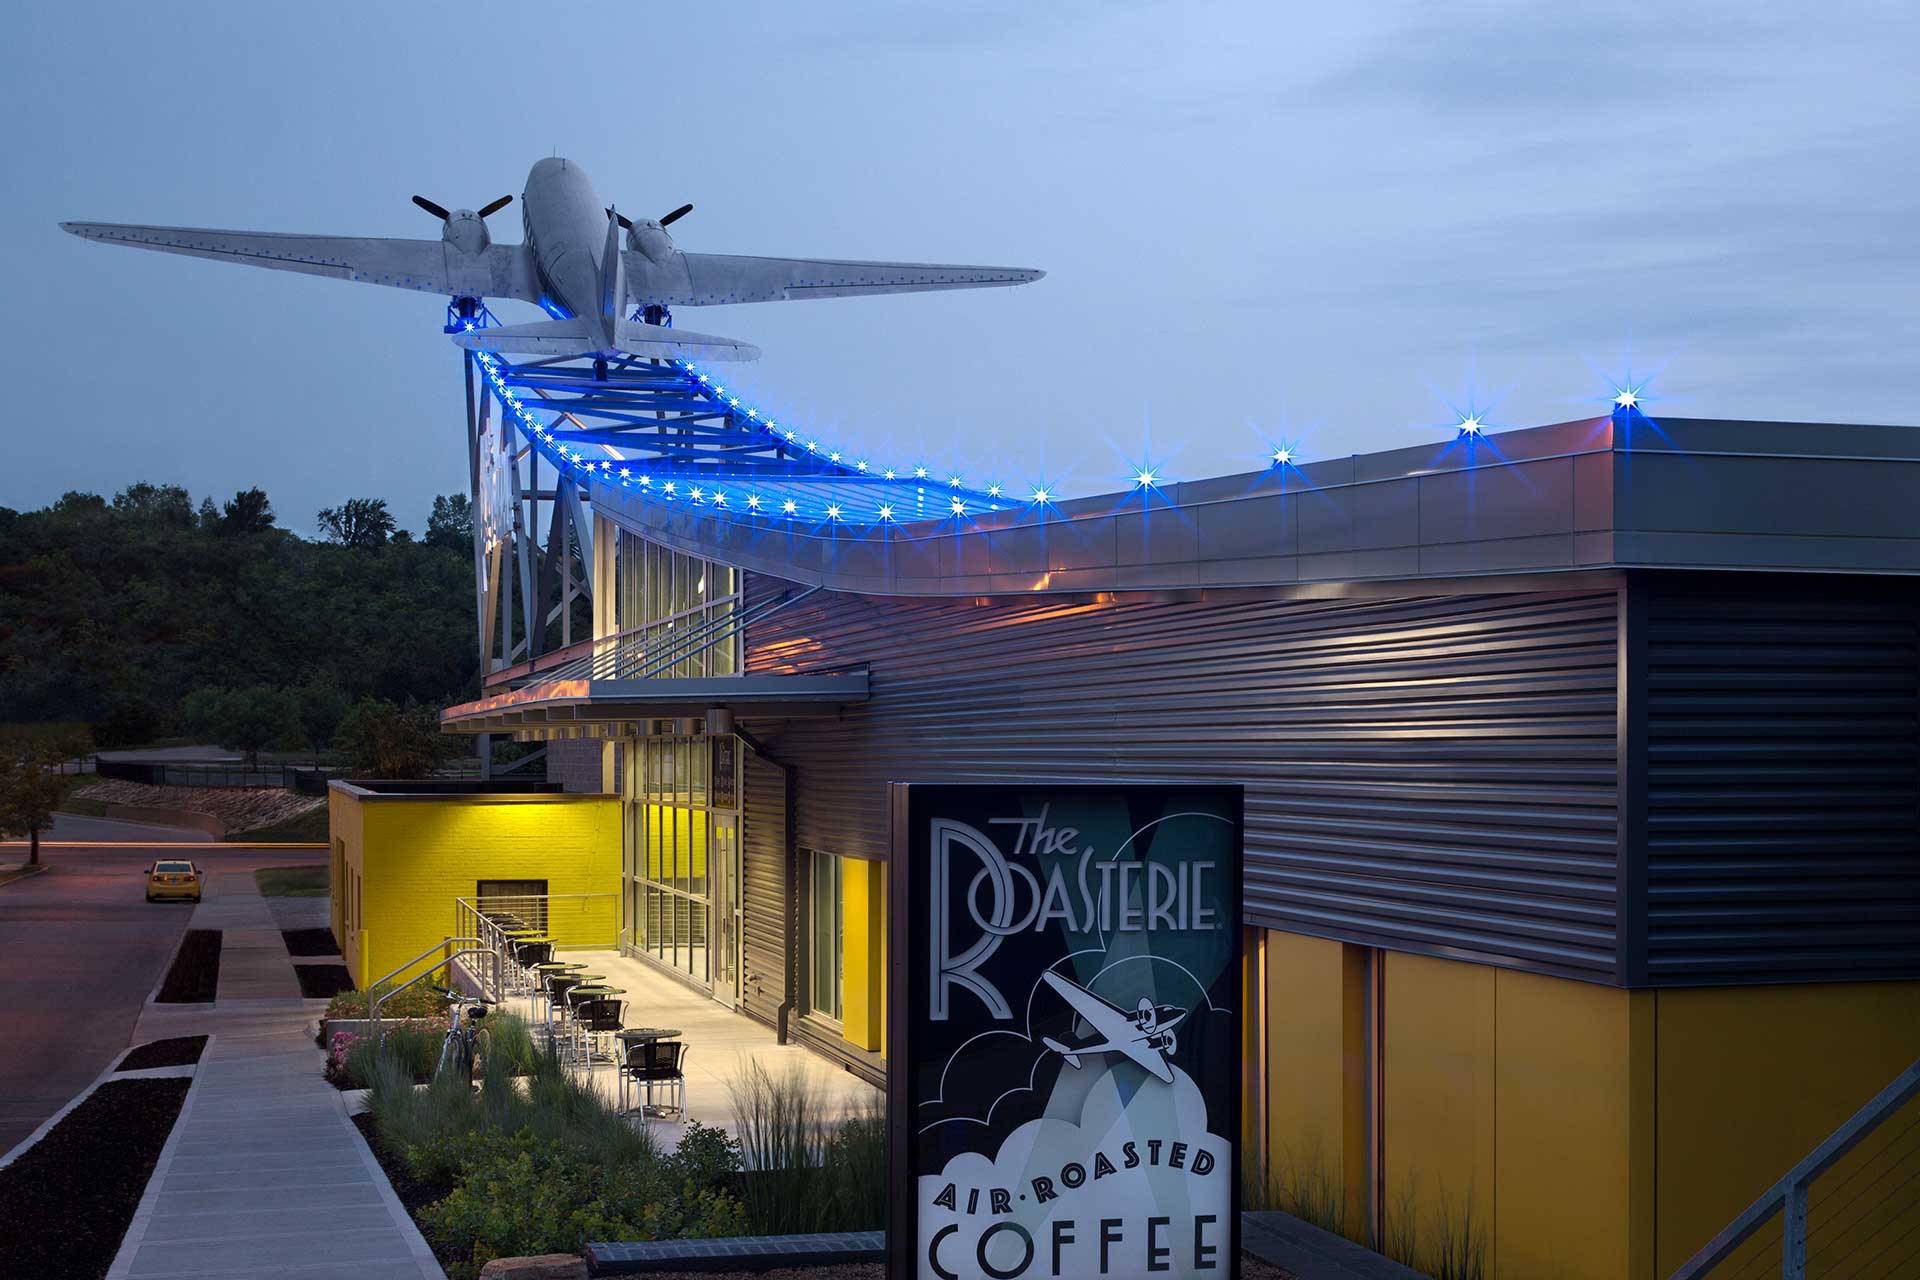 Fábrica de The Roasterie, de Kansas City, con un avión de doble hélice integrado en el diseño del techo